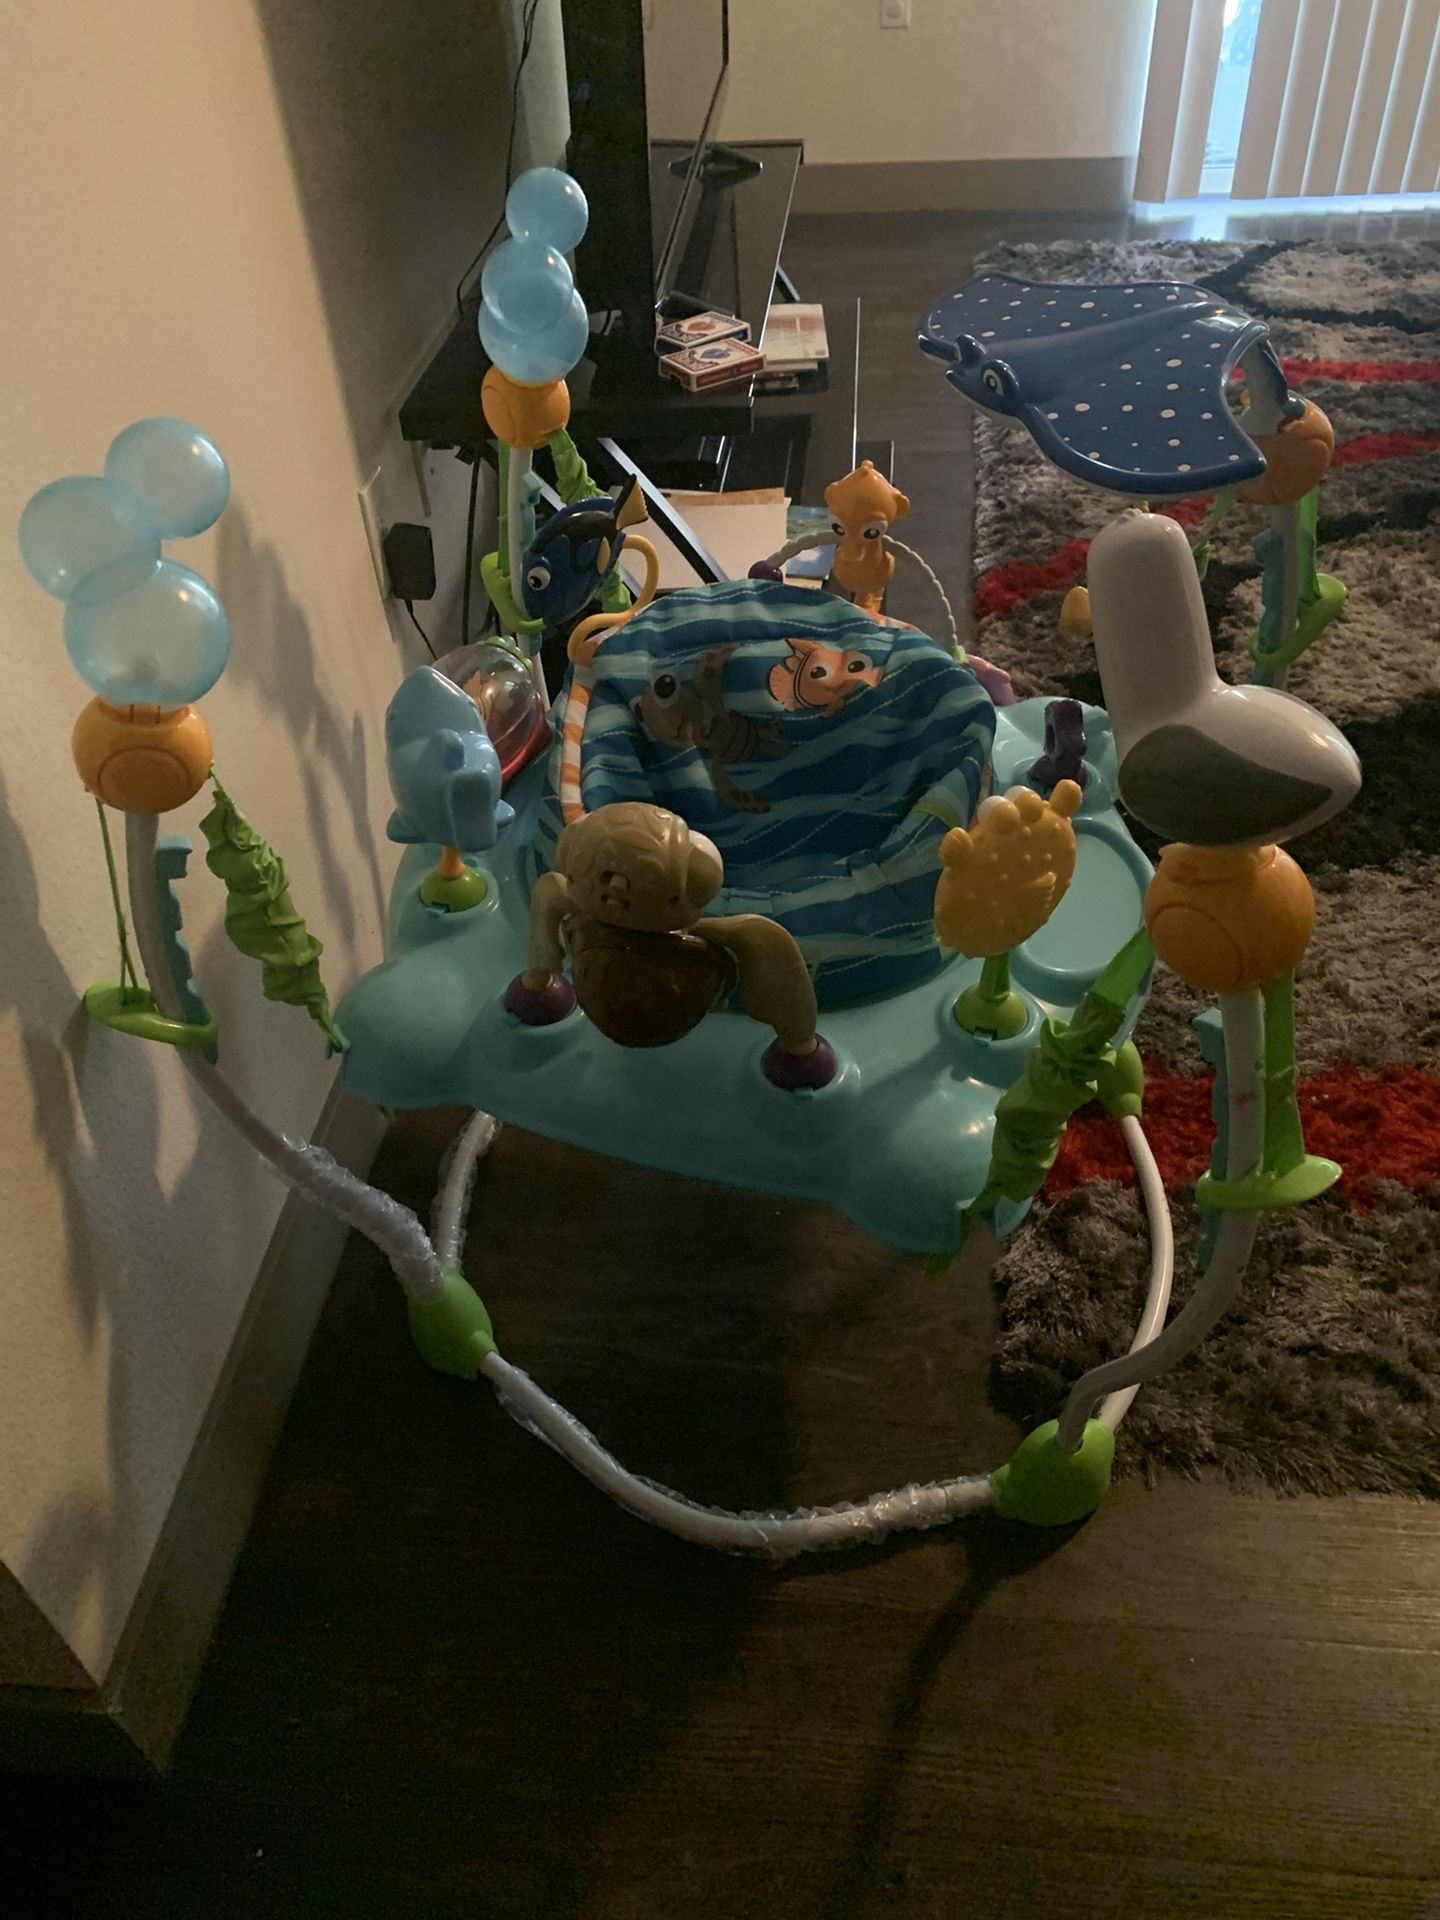 Kids II Bright Starts™ Finding Nemo Sea of Activities Jumper